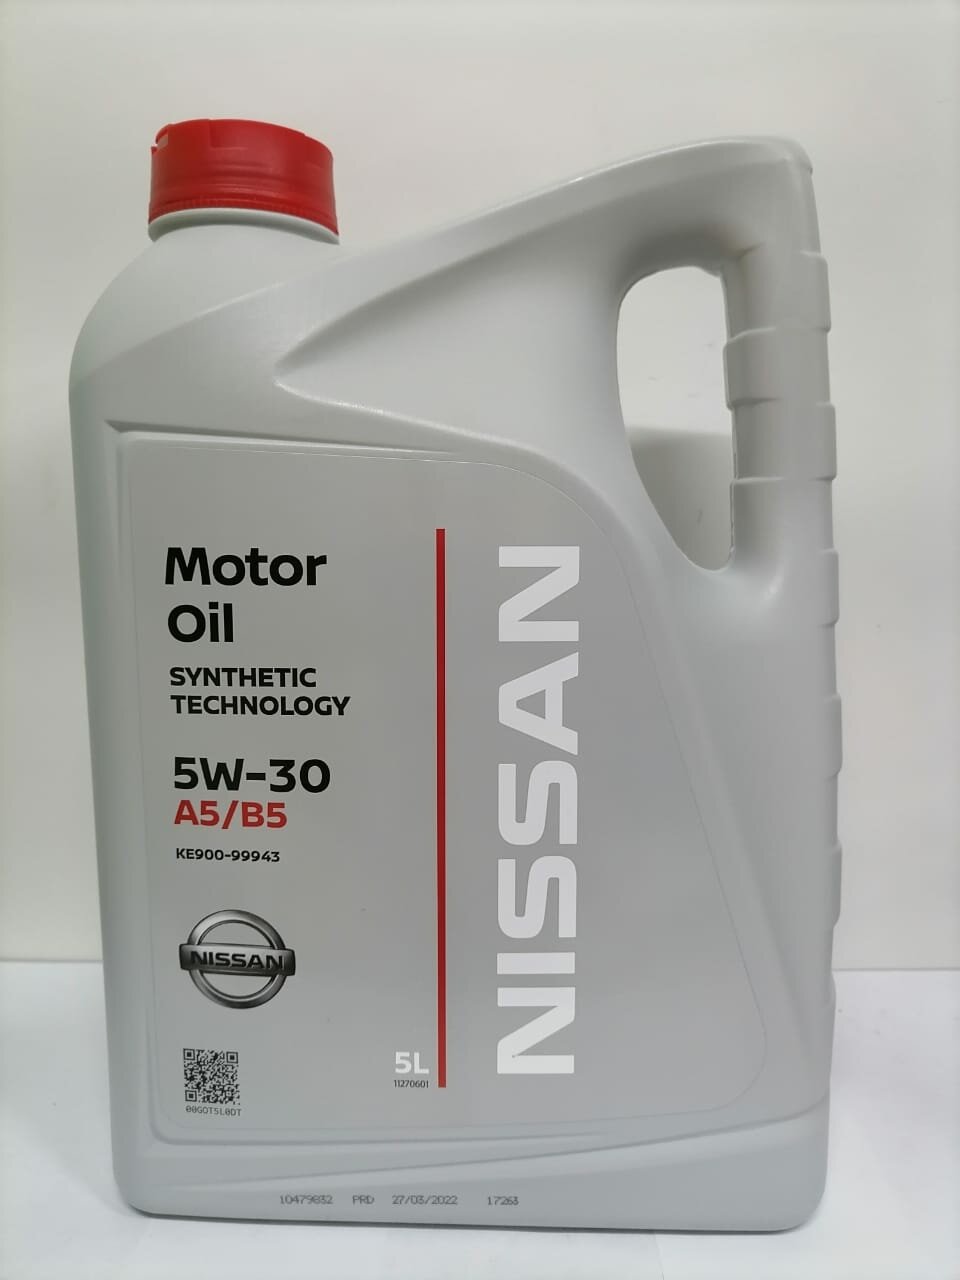 Моторное масло Nissan Motor Oil 5w30 A5/В5 5 л, артикул KE900-99943